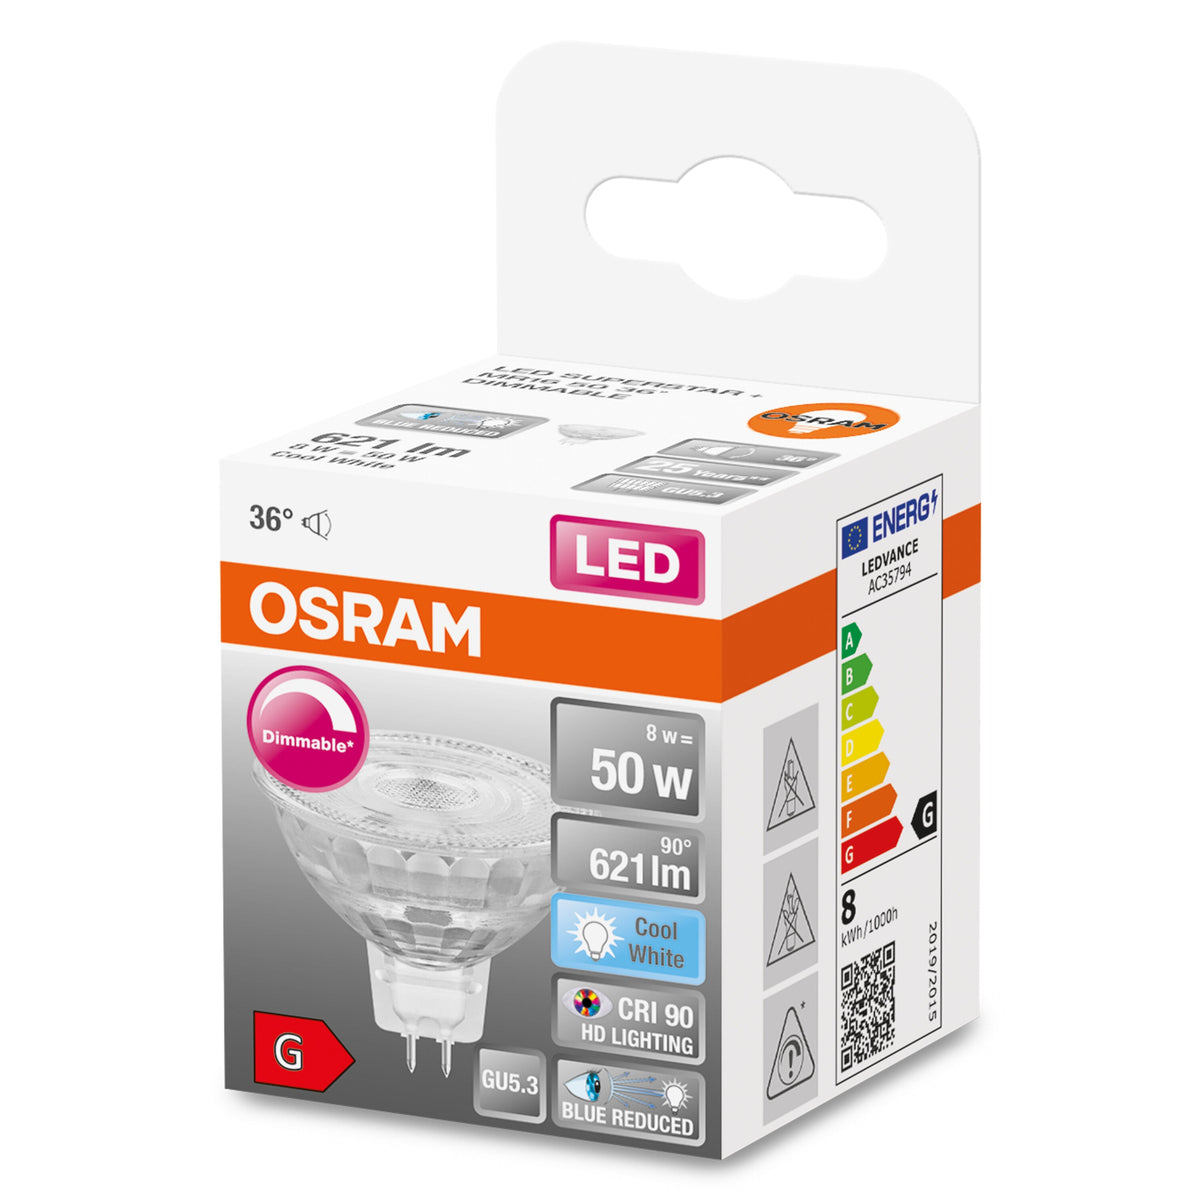 OSRAM Dimmbare LED Reflektor-Lampe LED SUPERSTAR + spot MR16 GL 50  DIM 8W/940 GU5.3 CRI90 BOX